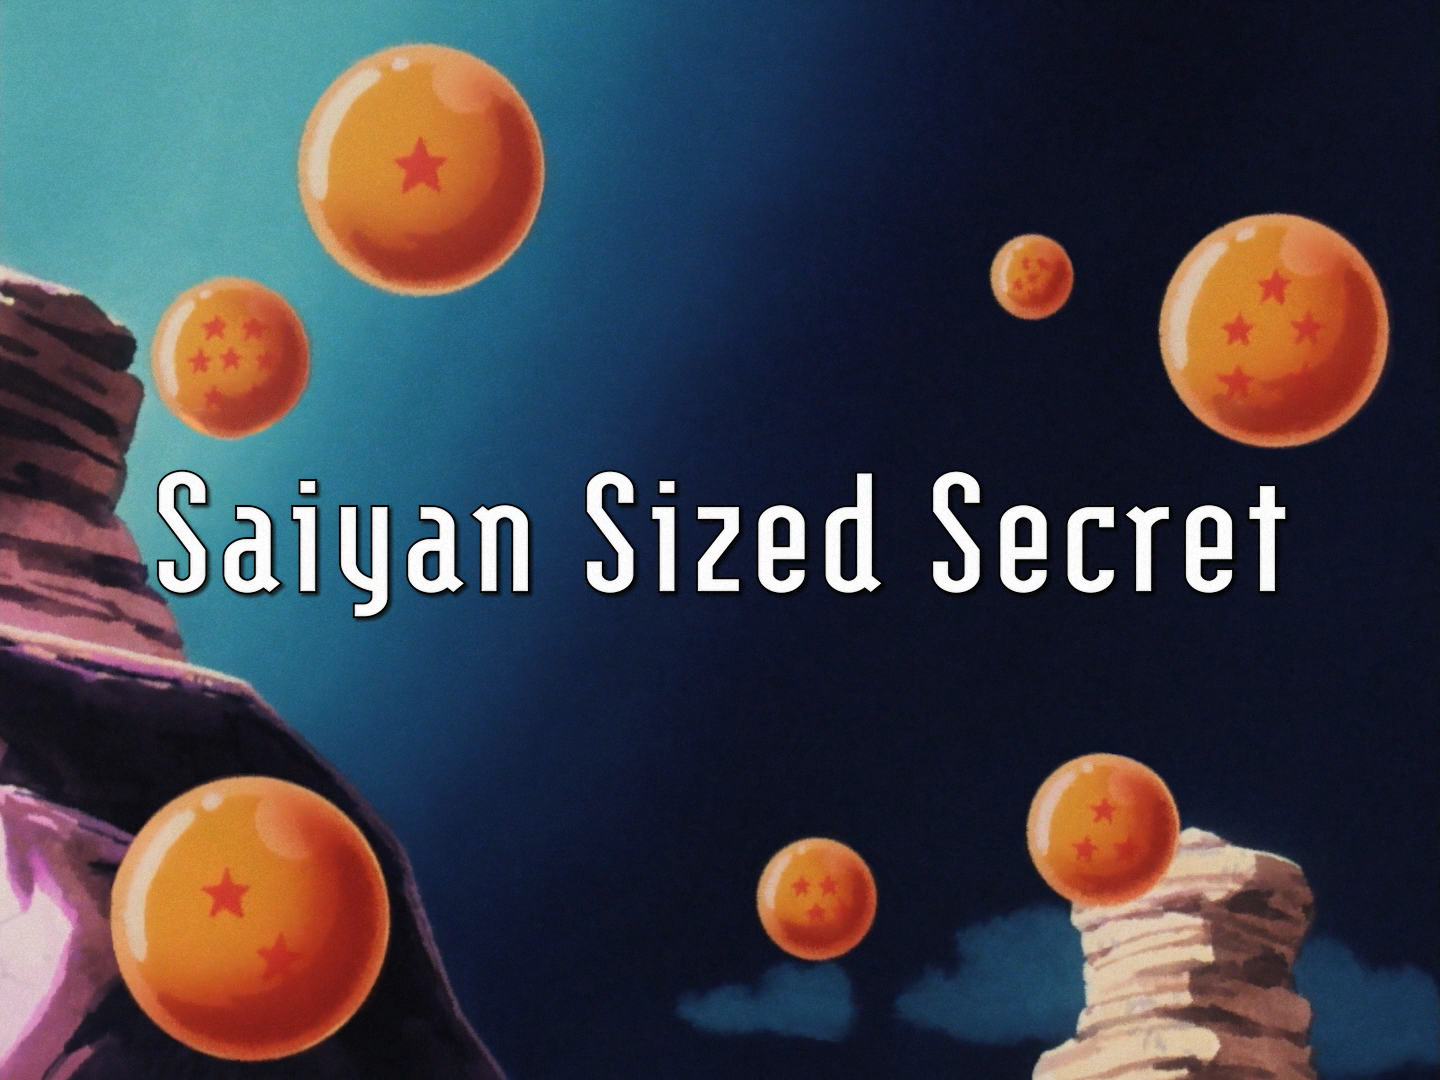 dragonball z episode 31 saiyan sized secret